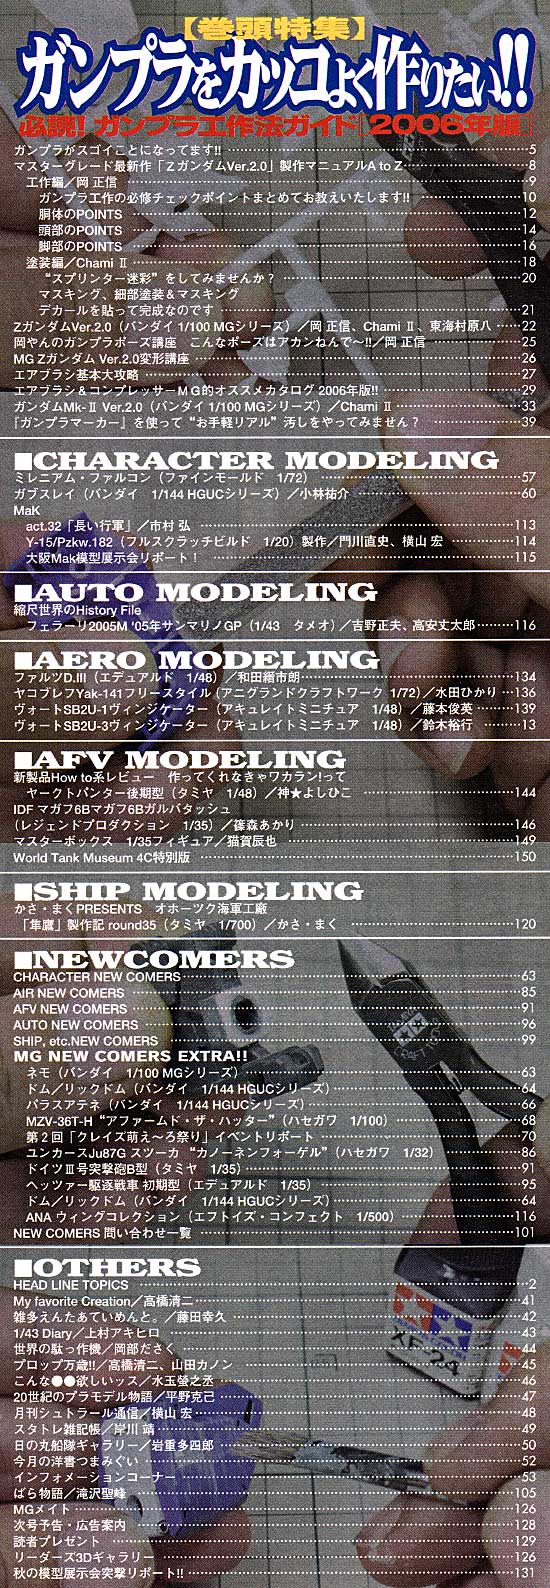 モデルグラフィックス 2006年2月号 雑誌 (大日本絵画 月刊 モデルグラフィックス No.255) 商品画像_1